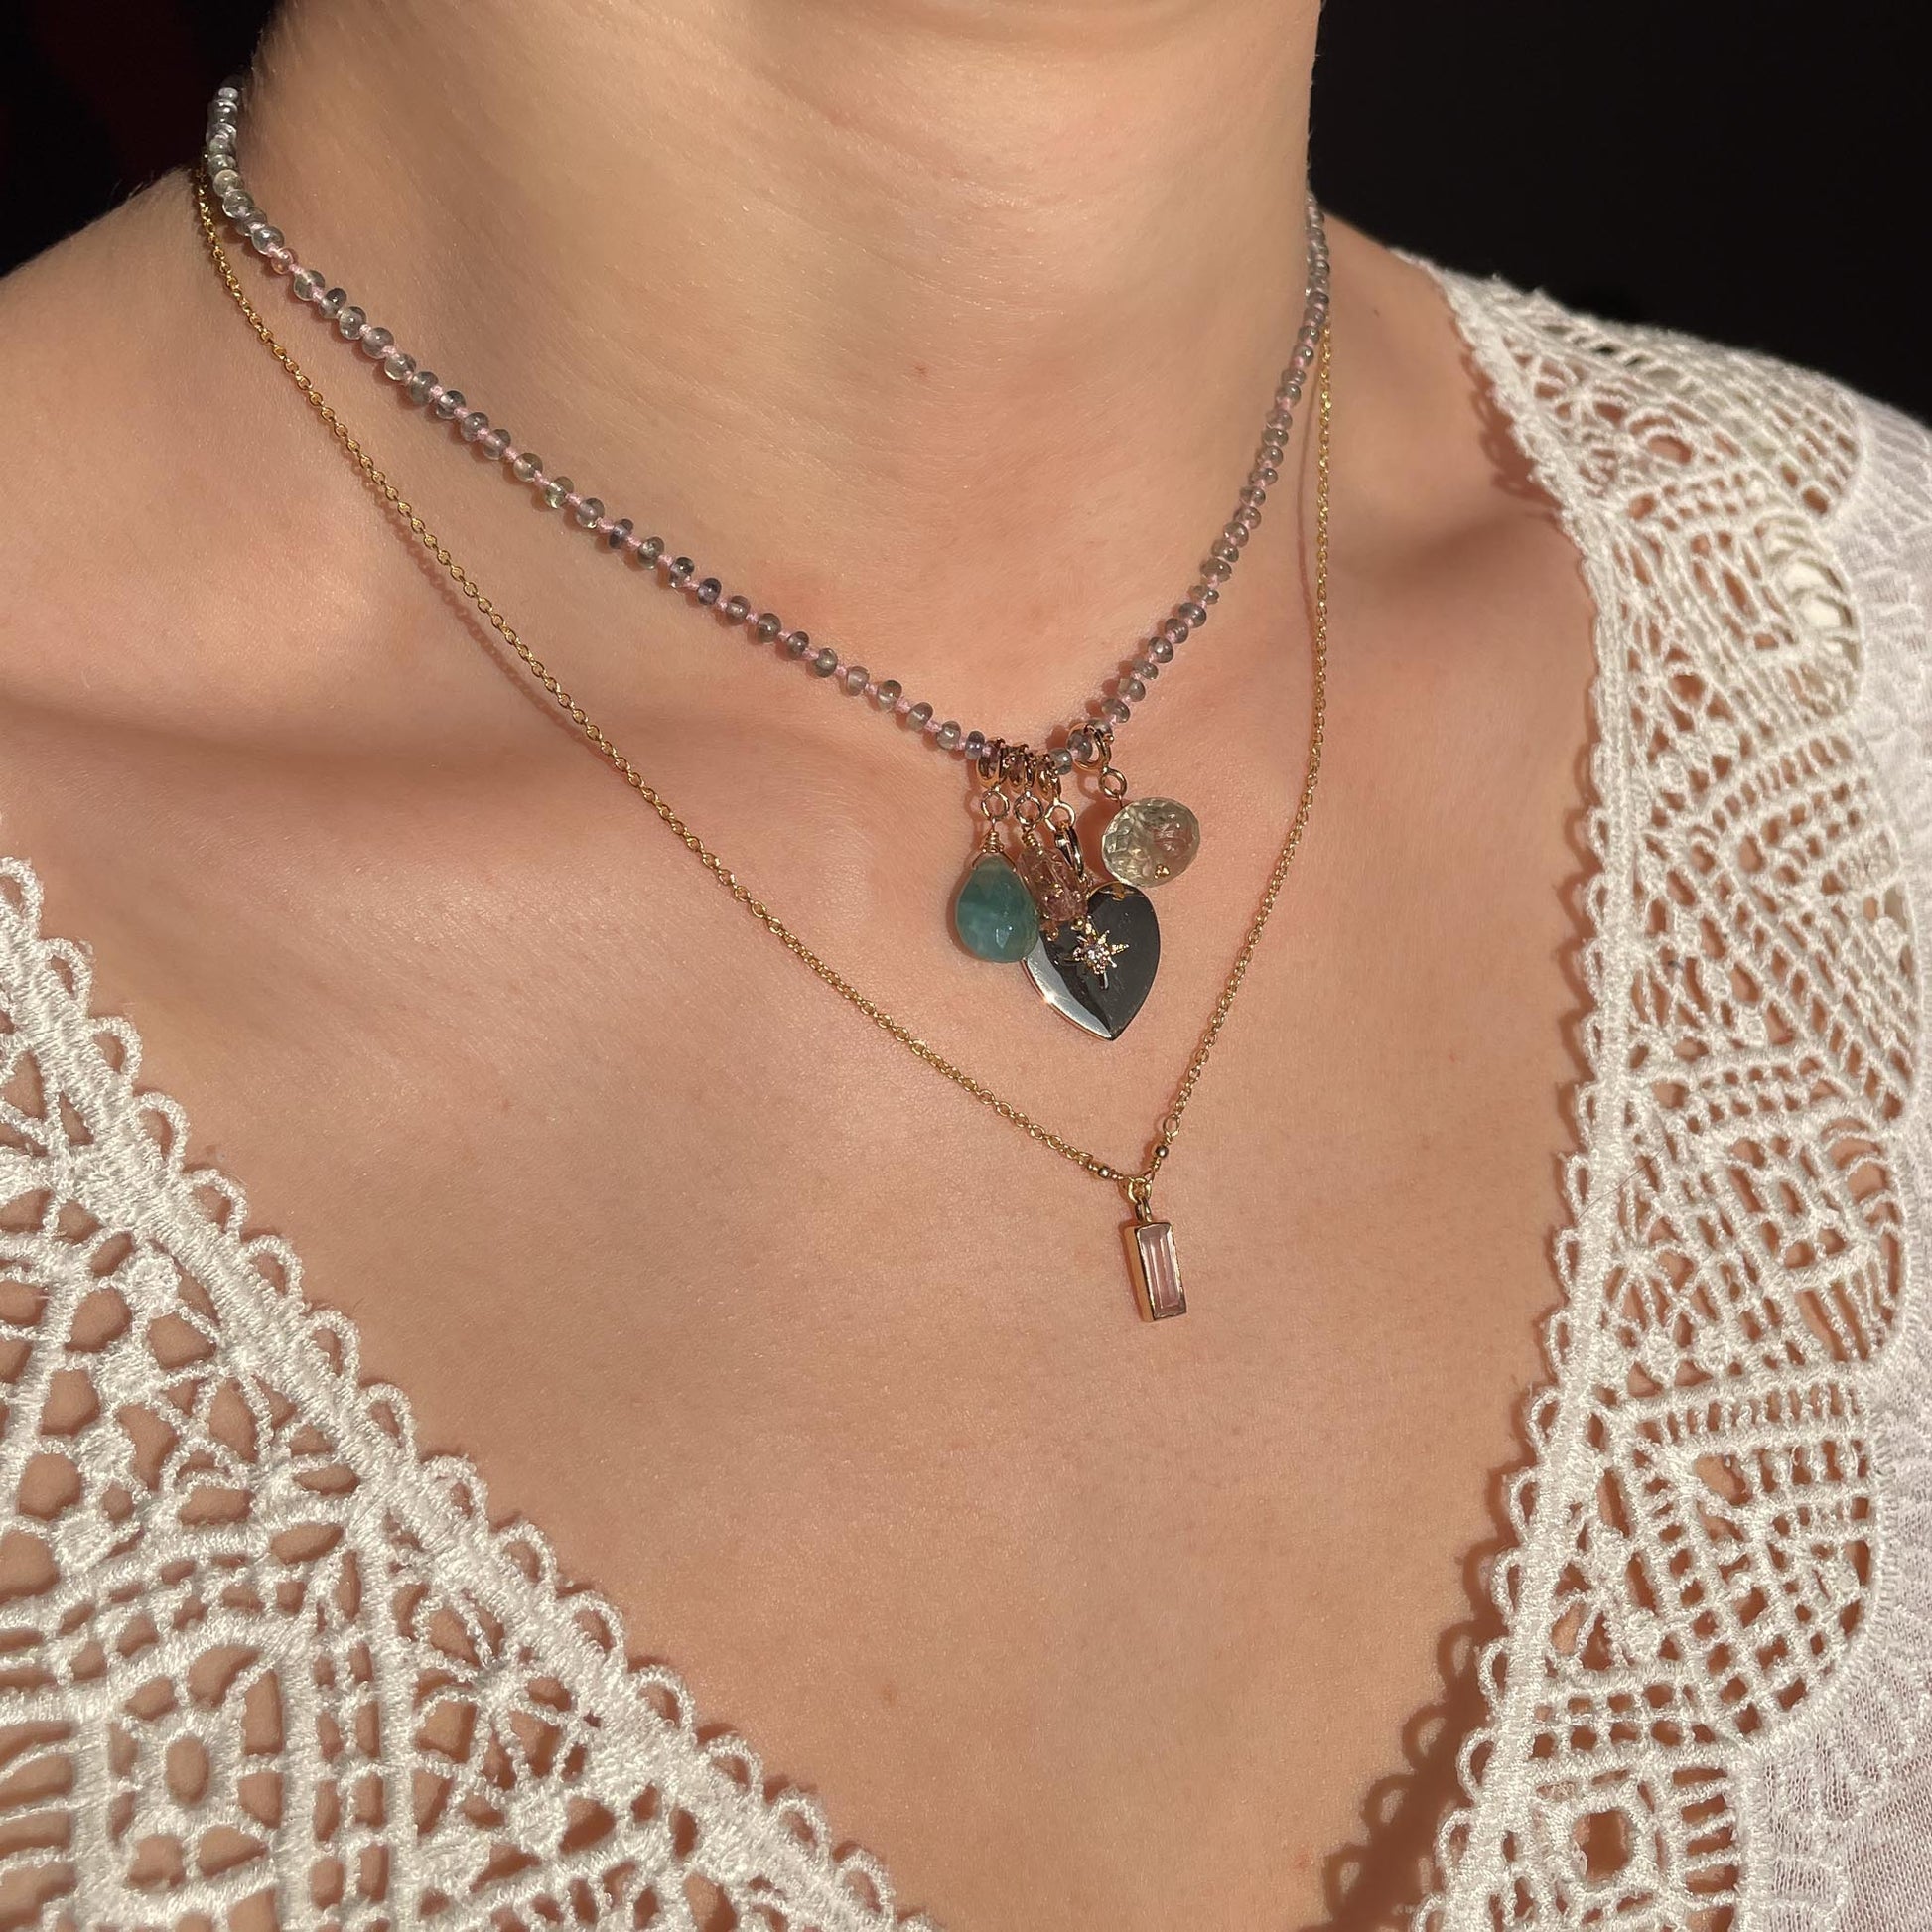 Collier 36 cm green saphir et 4 charms composés de différentes pierres fines naturelles et d'un pendentif cœur plaqué or